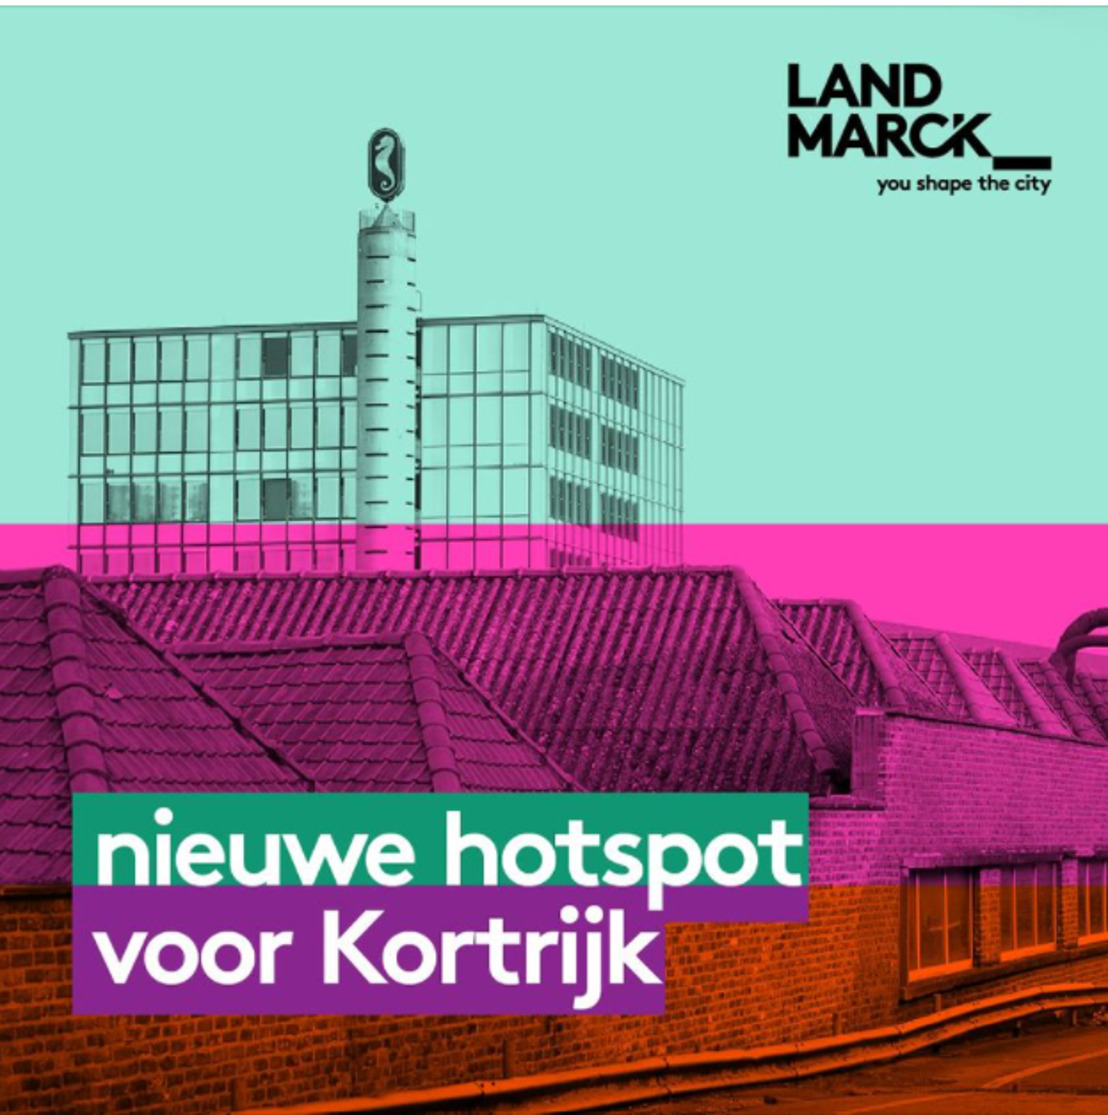 LandMarck, een nieuwe hotspot voor Kortrijk.